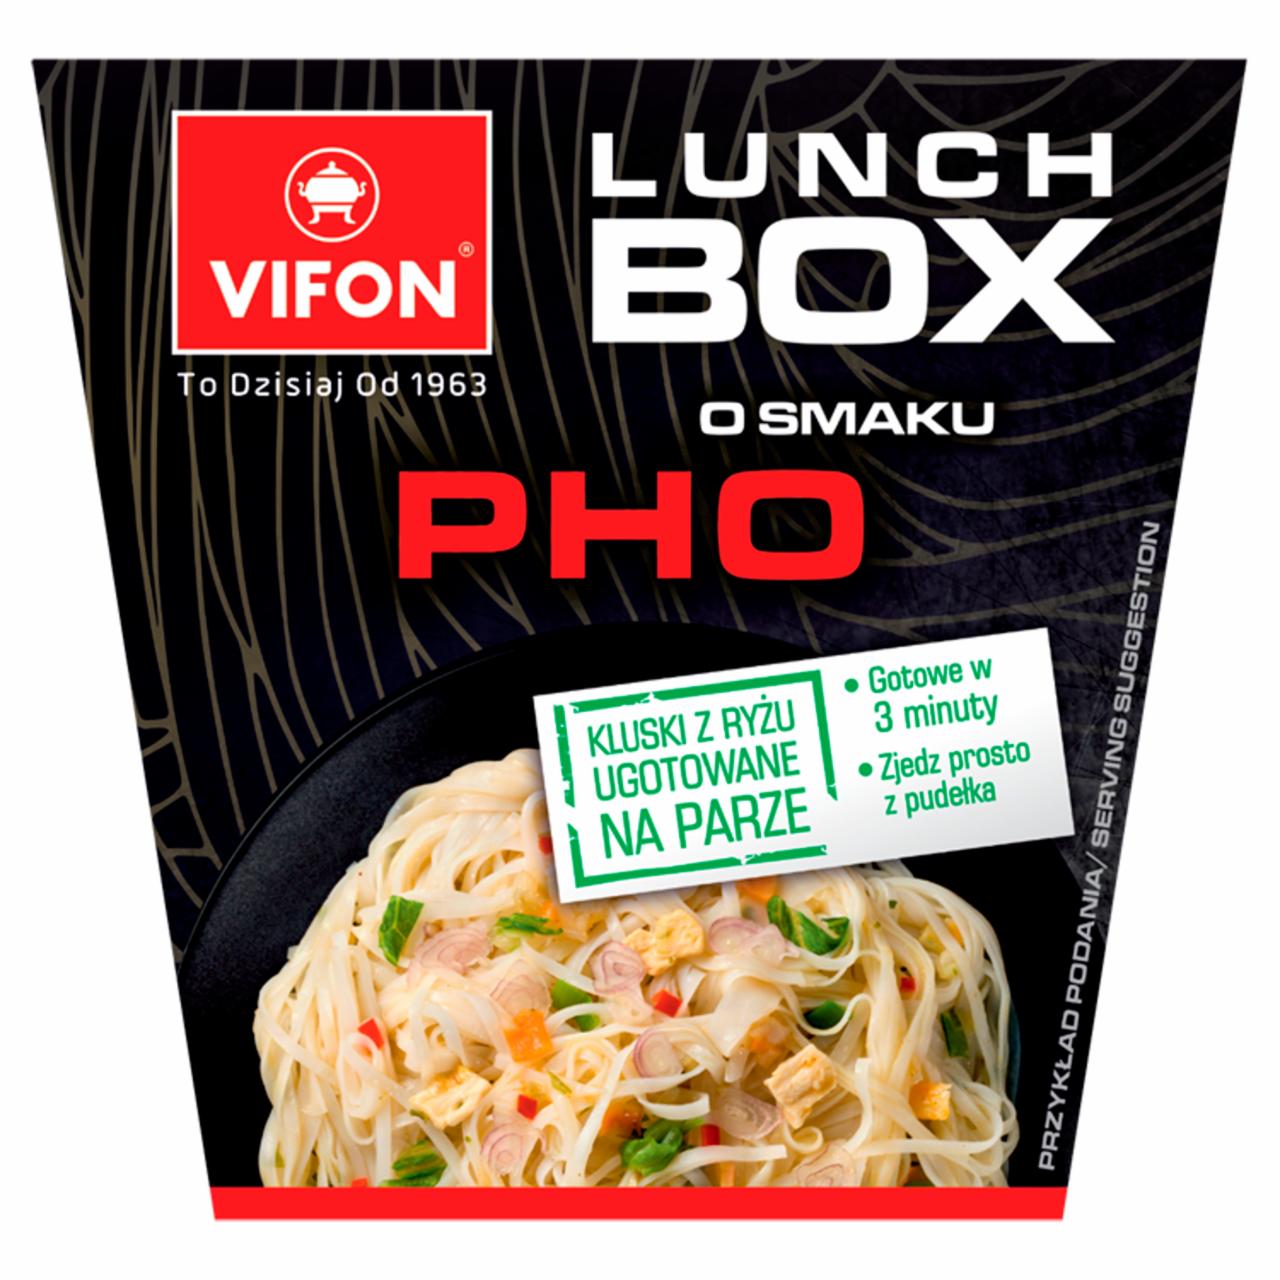 Zdjęcia - Vifon Lunch Box Pho Danie błyskawiczne 85 g